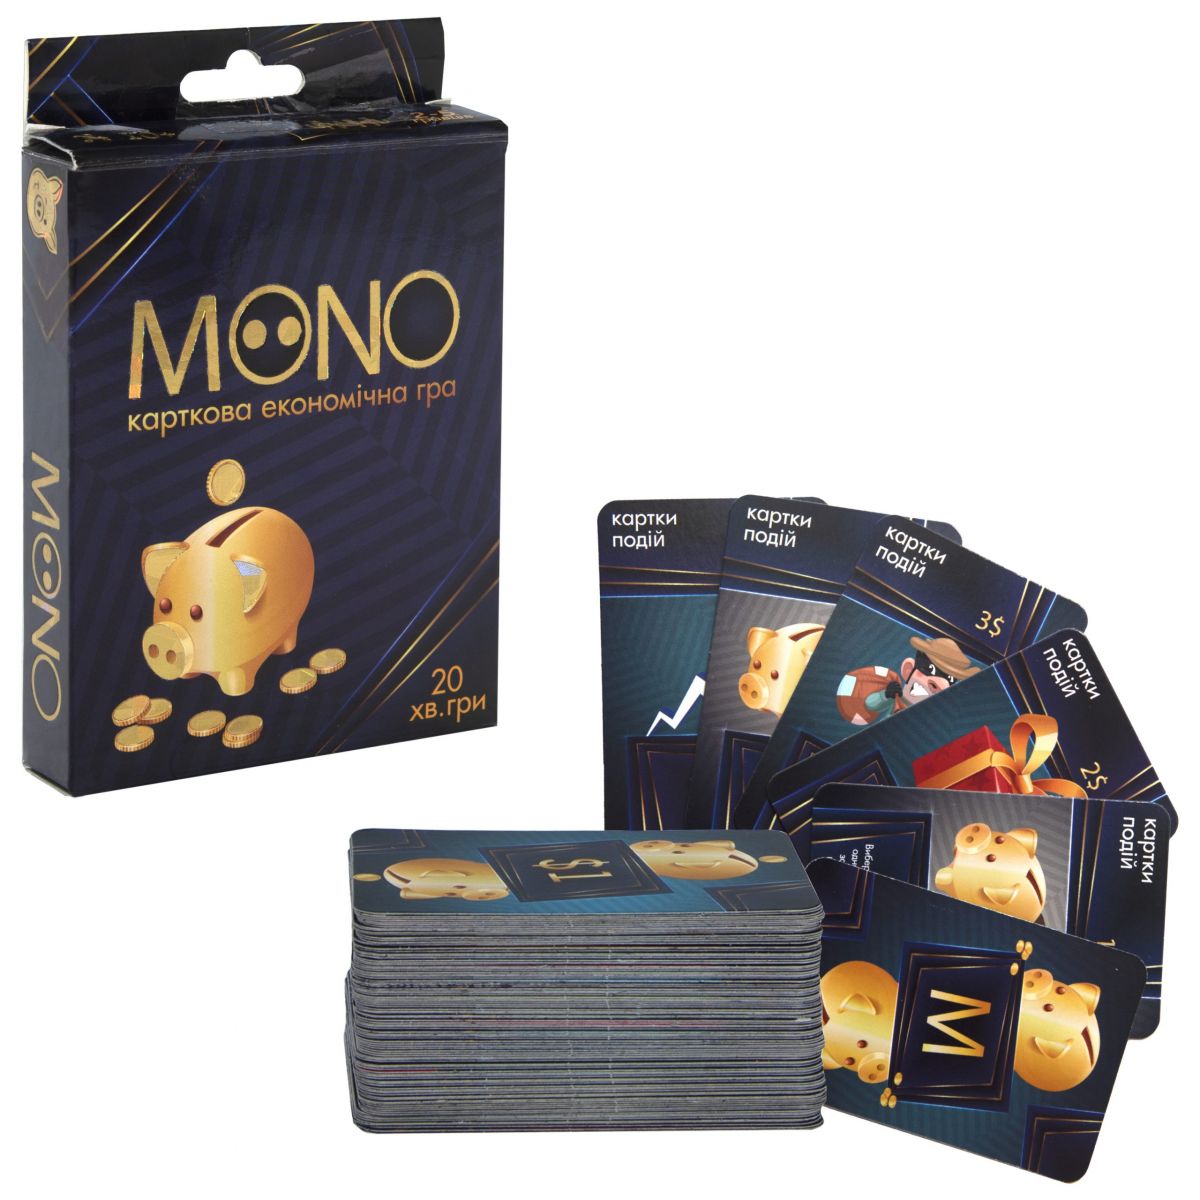 Карточная экономическая игра "Mono" (укр)